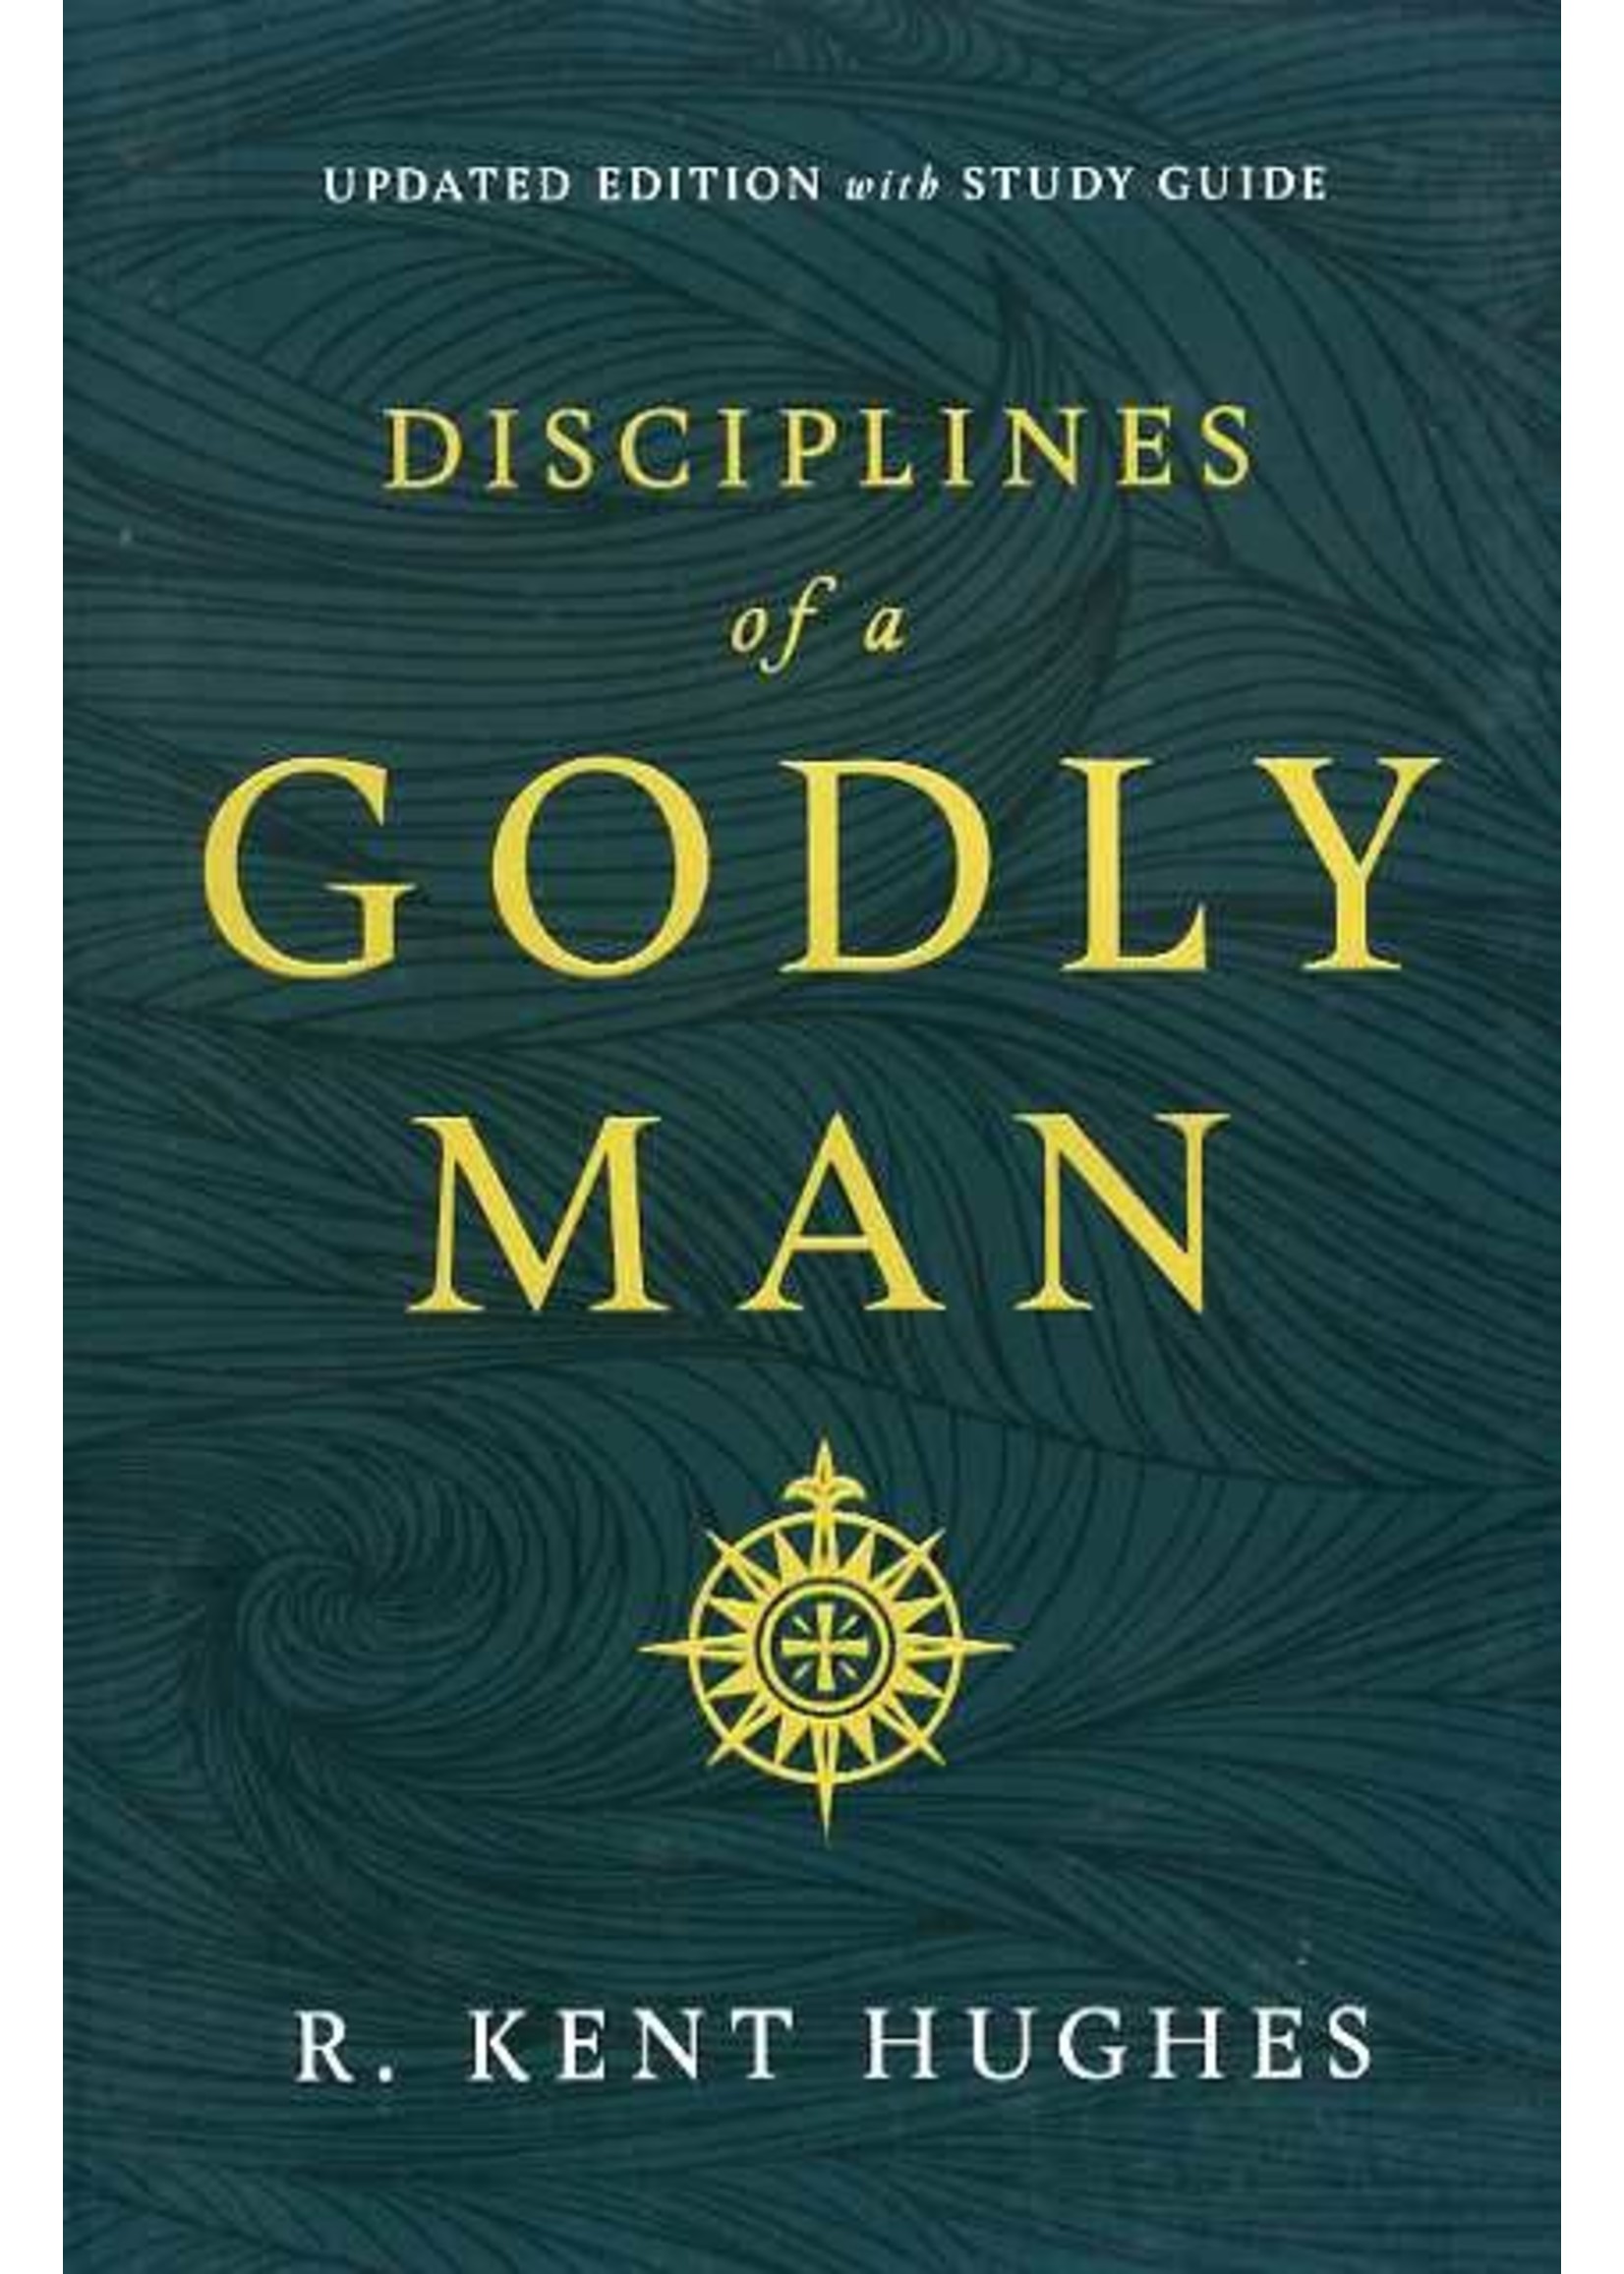 Crossway Disciplines of a Godly Man - R. Kent Hughes